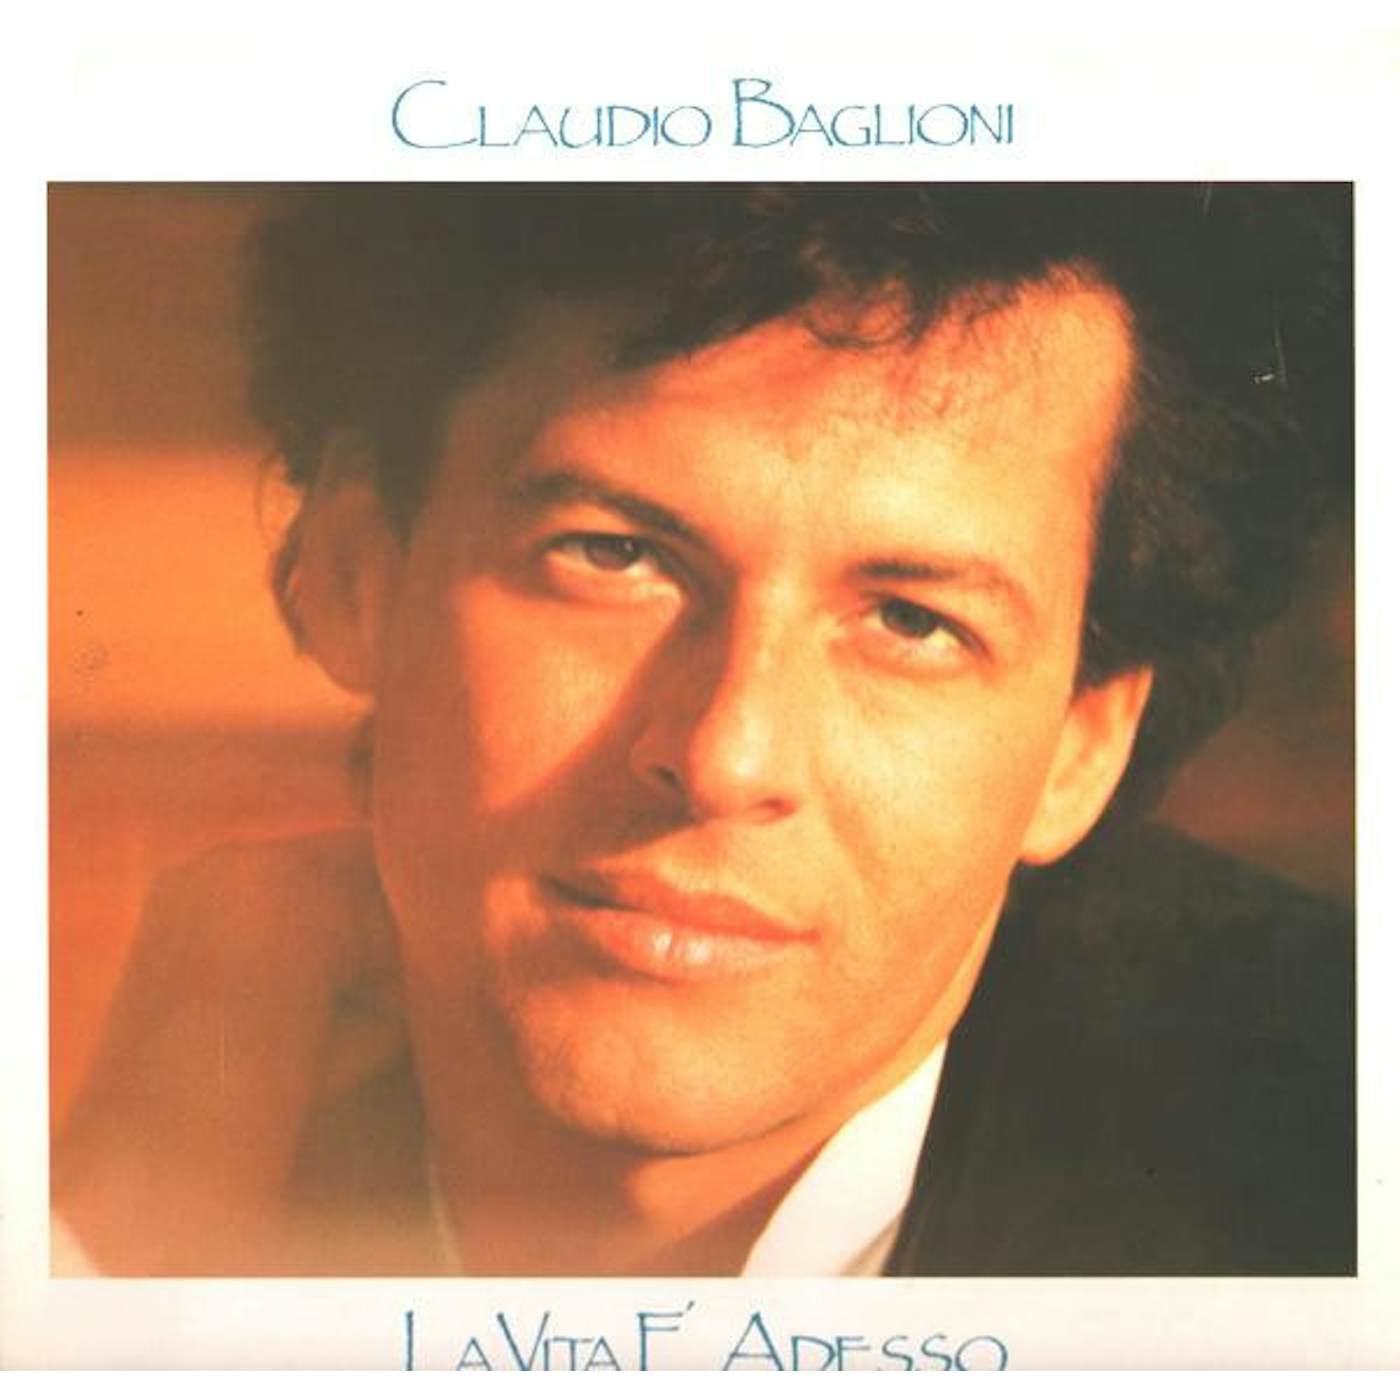 Claudio Baglioni La Vita E Adesso Vinyl Record